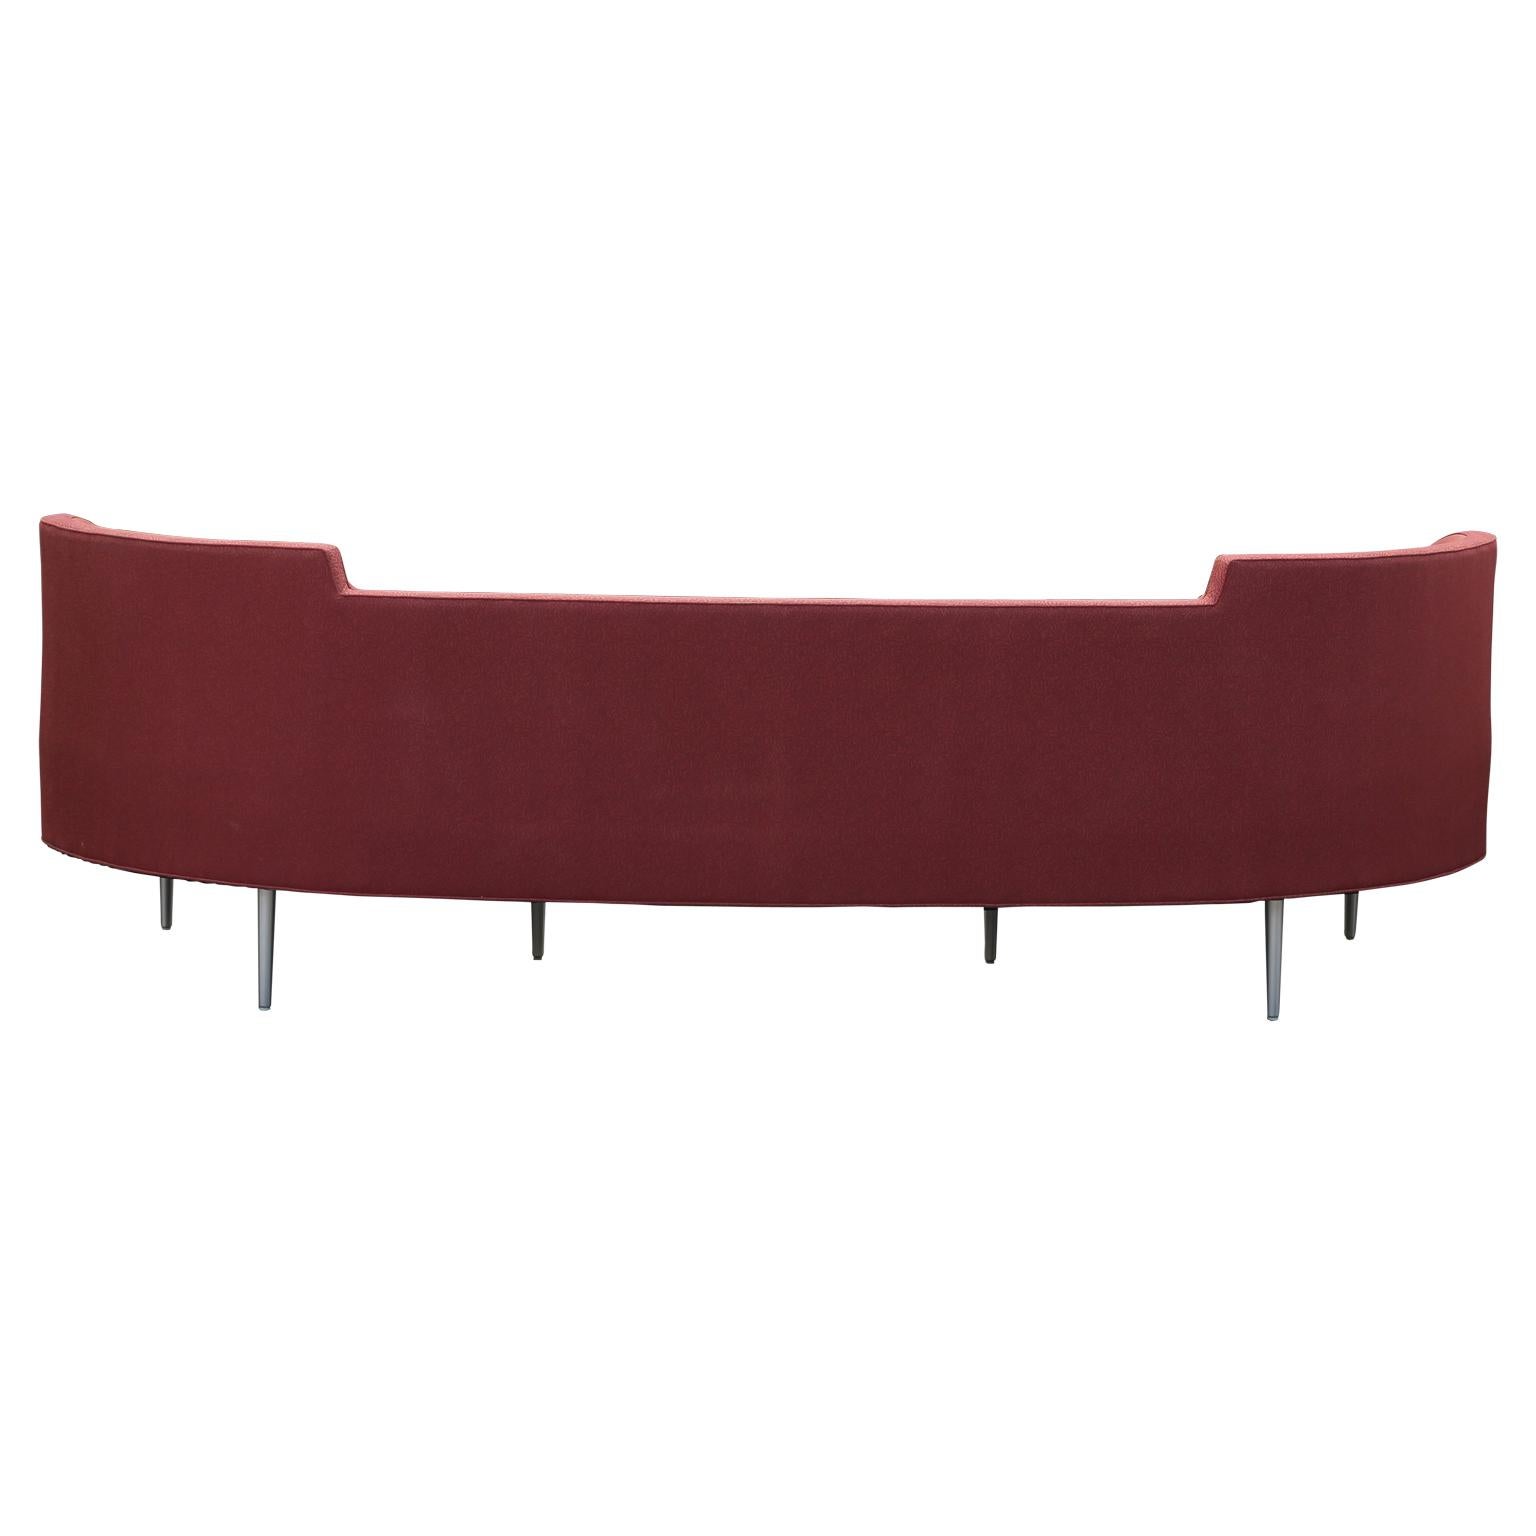 American Modern Edward Wormley for Dunbar Red Oasis Sofa